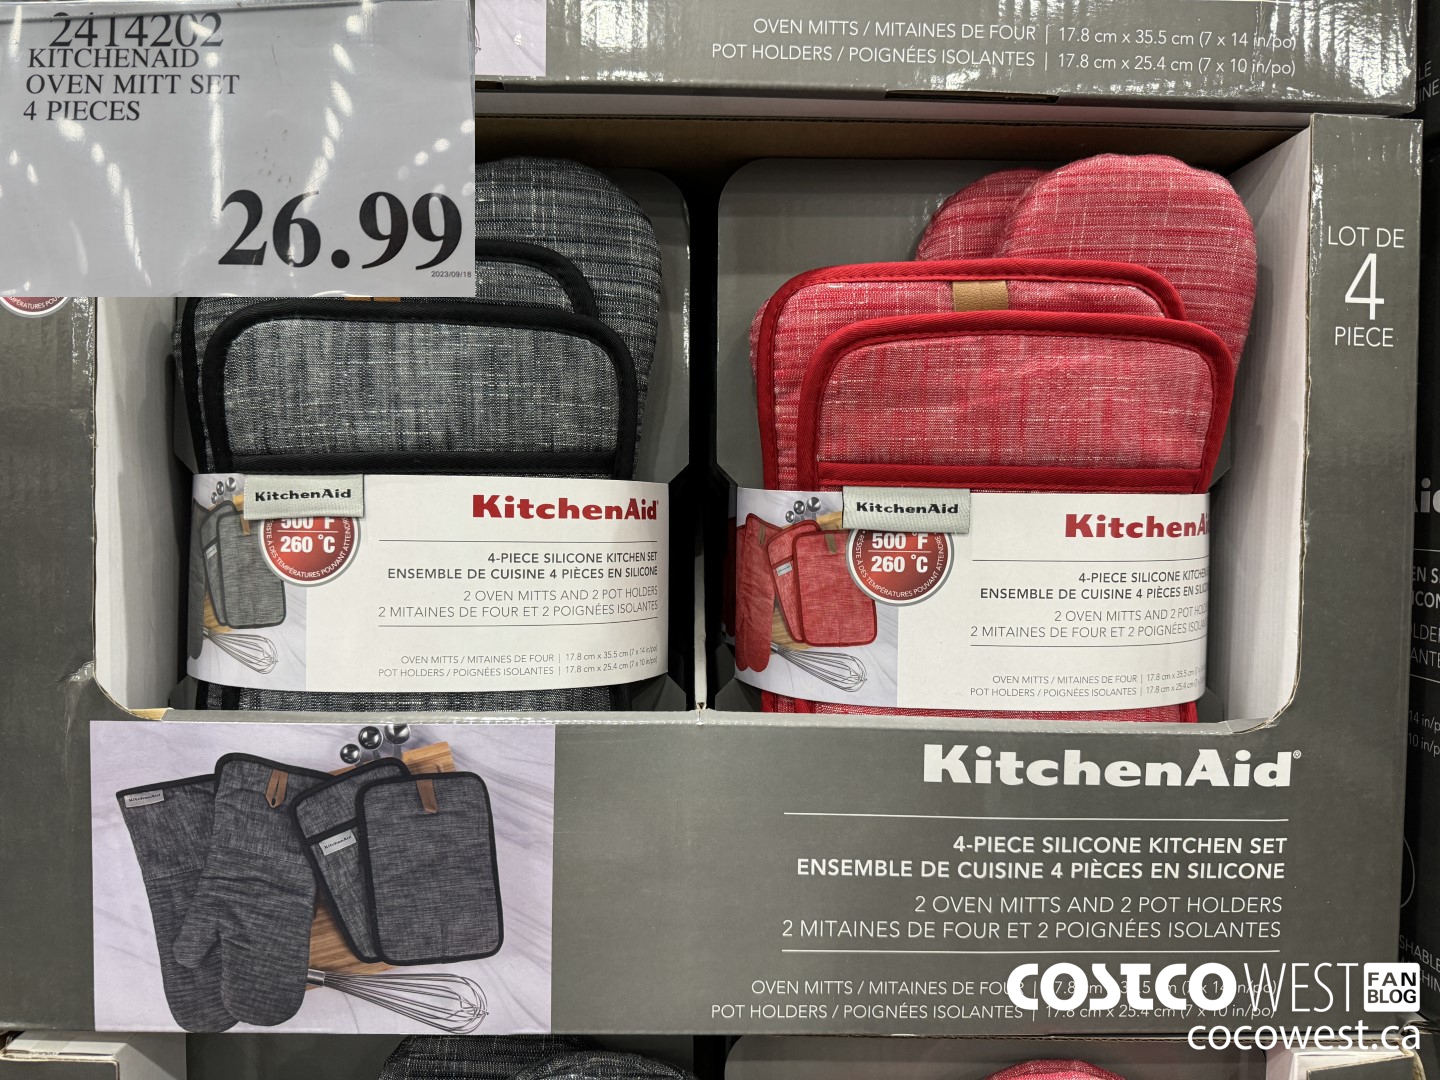 Costco KitchenAid Oven Mitt Set Review